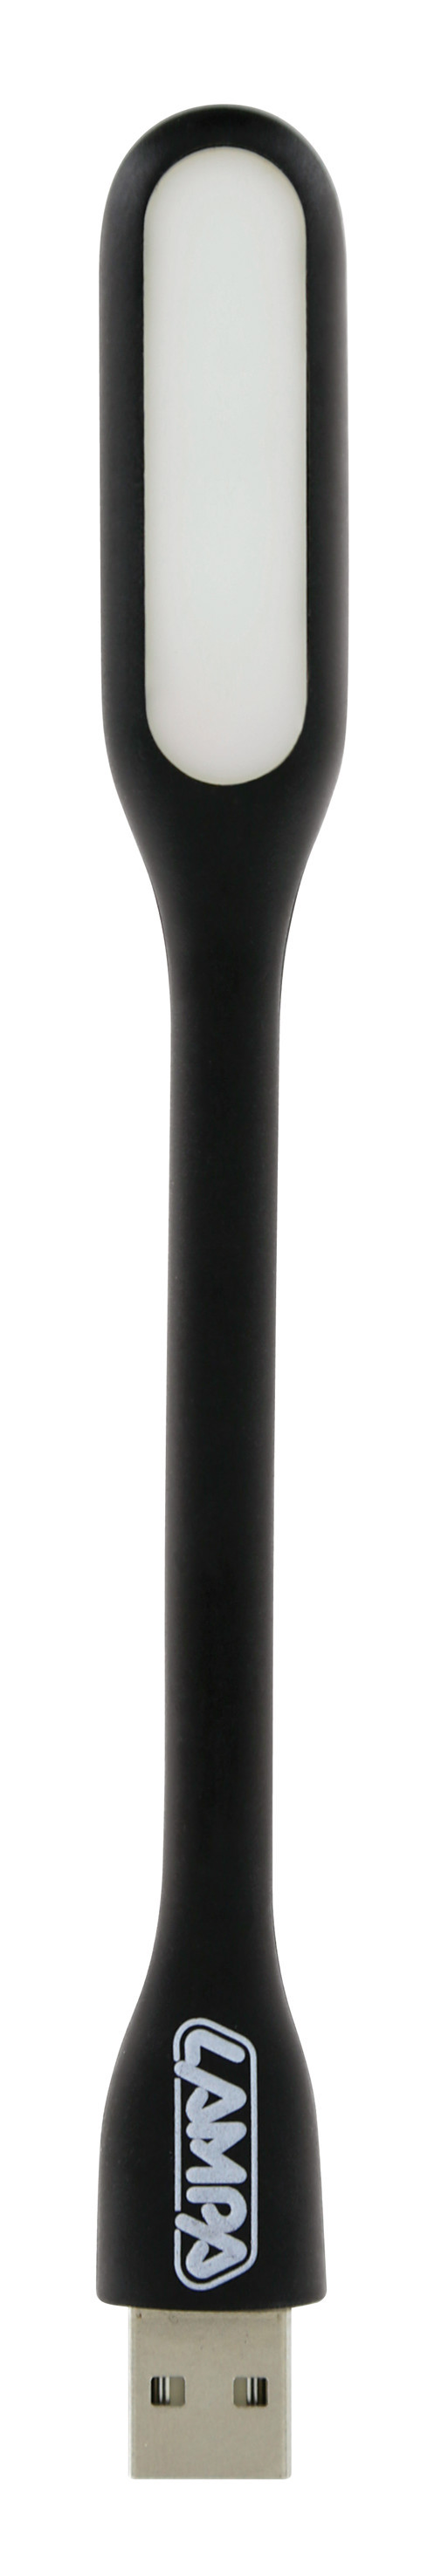 Lampa citit flexibila COB-LED si priza USB 12/24V thumb